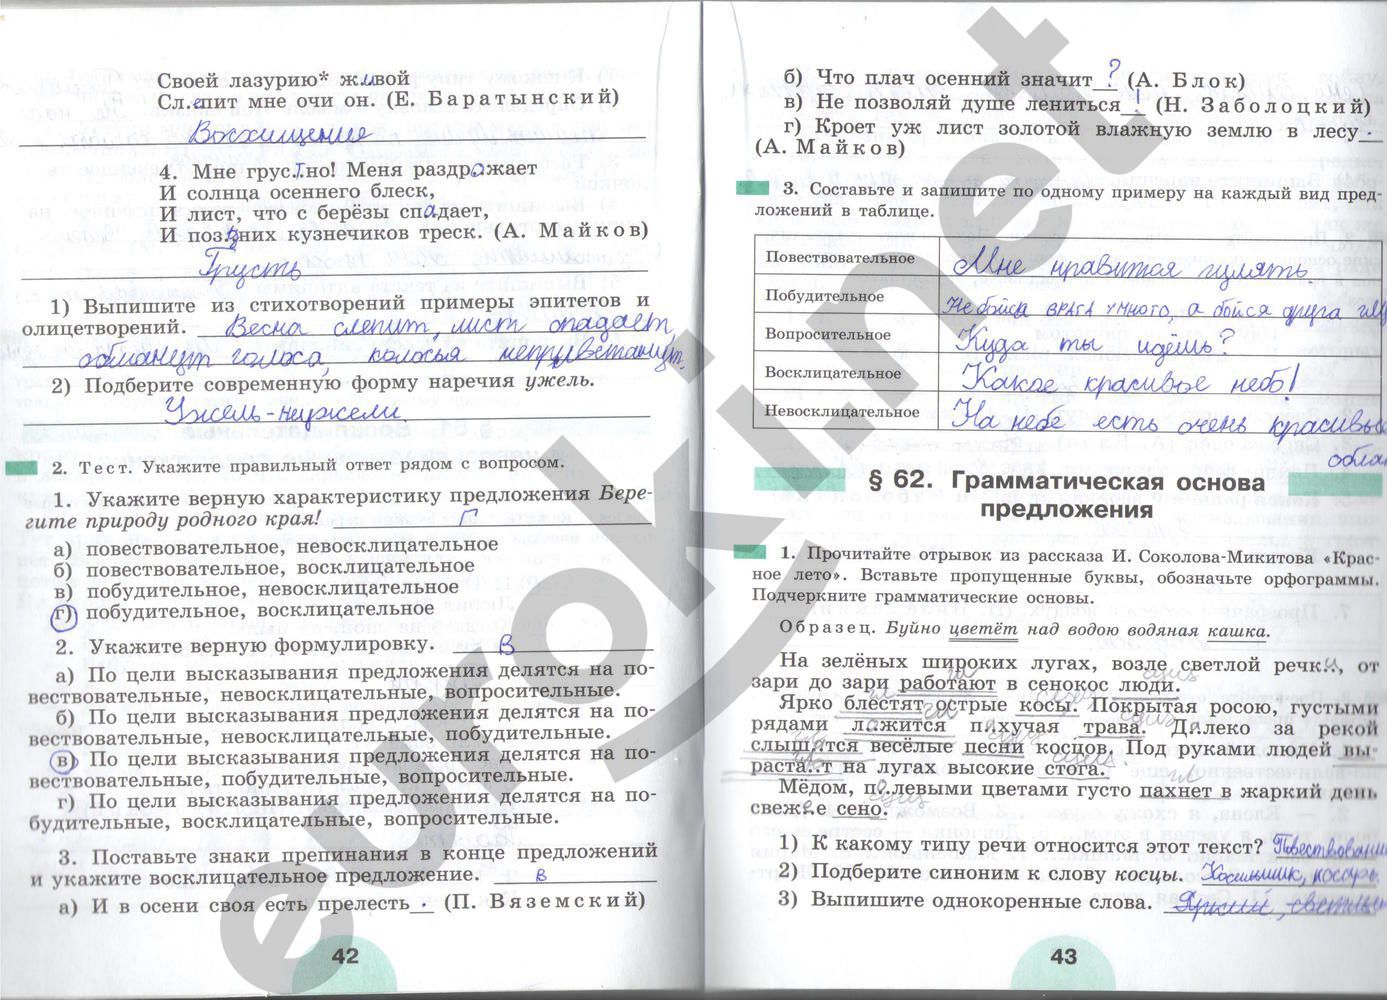 ГДЗ Русский язык 5 класс - стр. 42-43